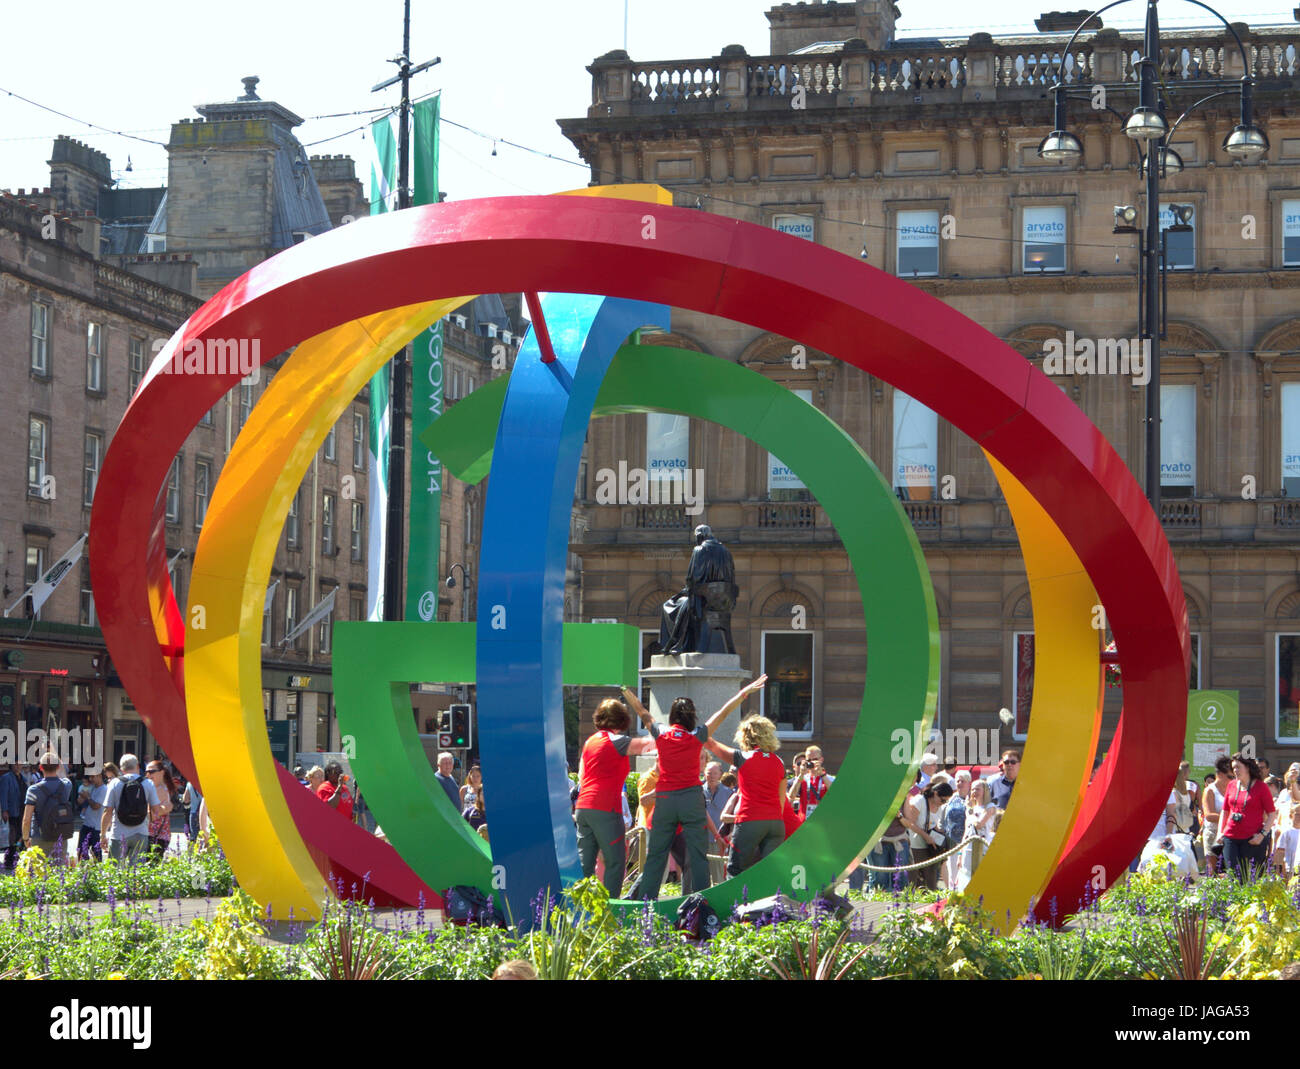 Célébrations des Jeux du Commonwealth 2014 George Square, Glasgow, Royaume-Uni célébrer les bénévoles ayant photos prises en uniforme avec logo Big G Banque D'Images